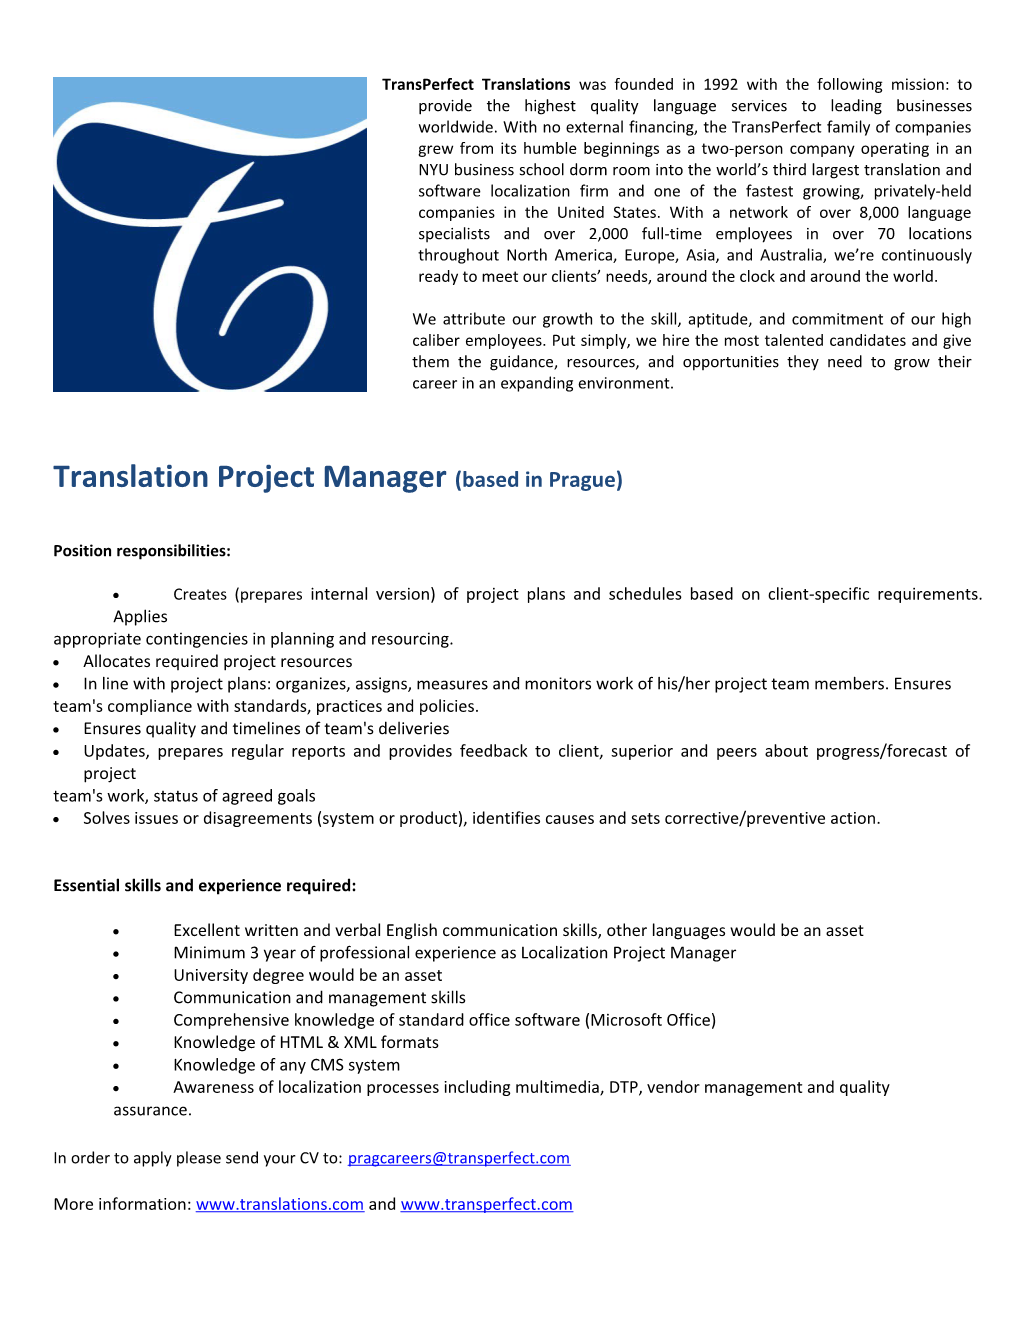 Translation Project Manager (Based in Prague)